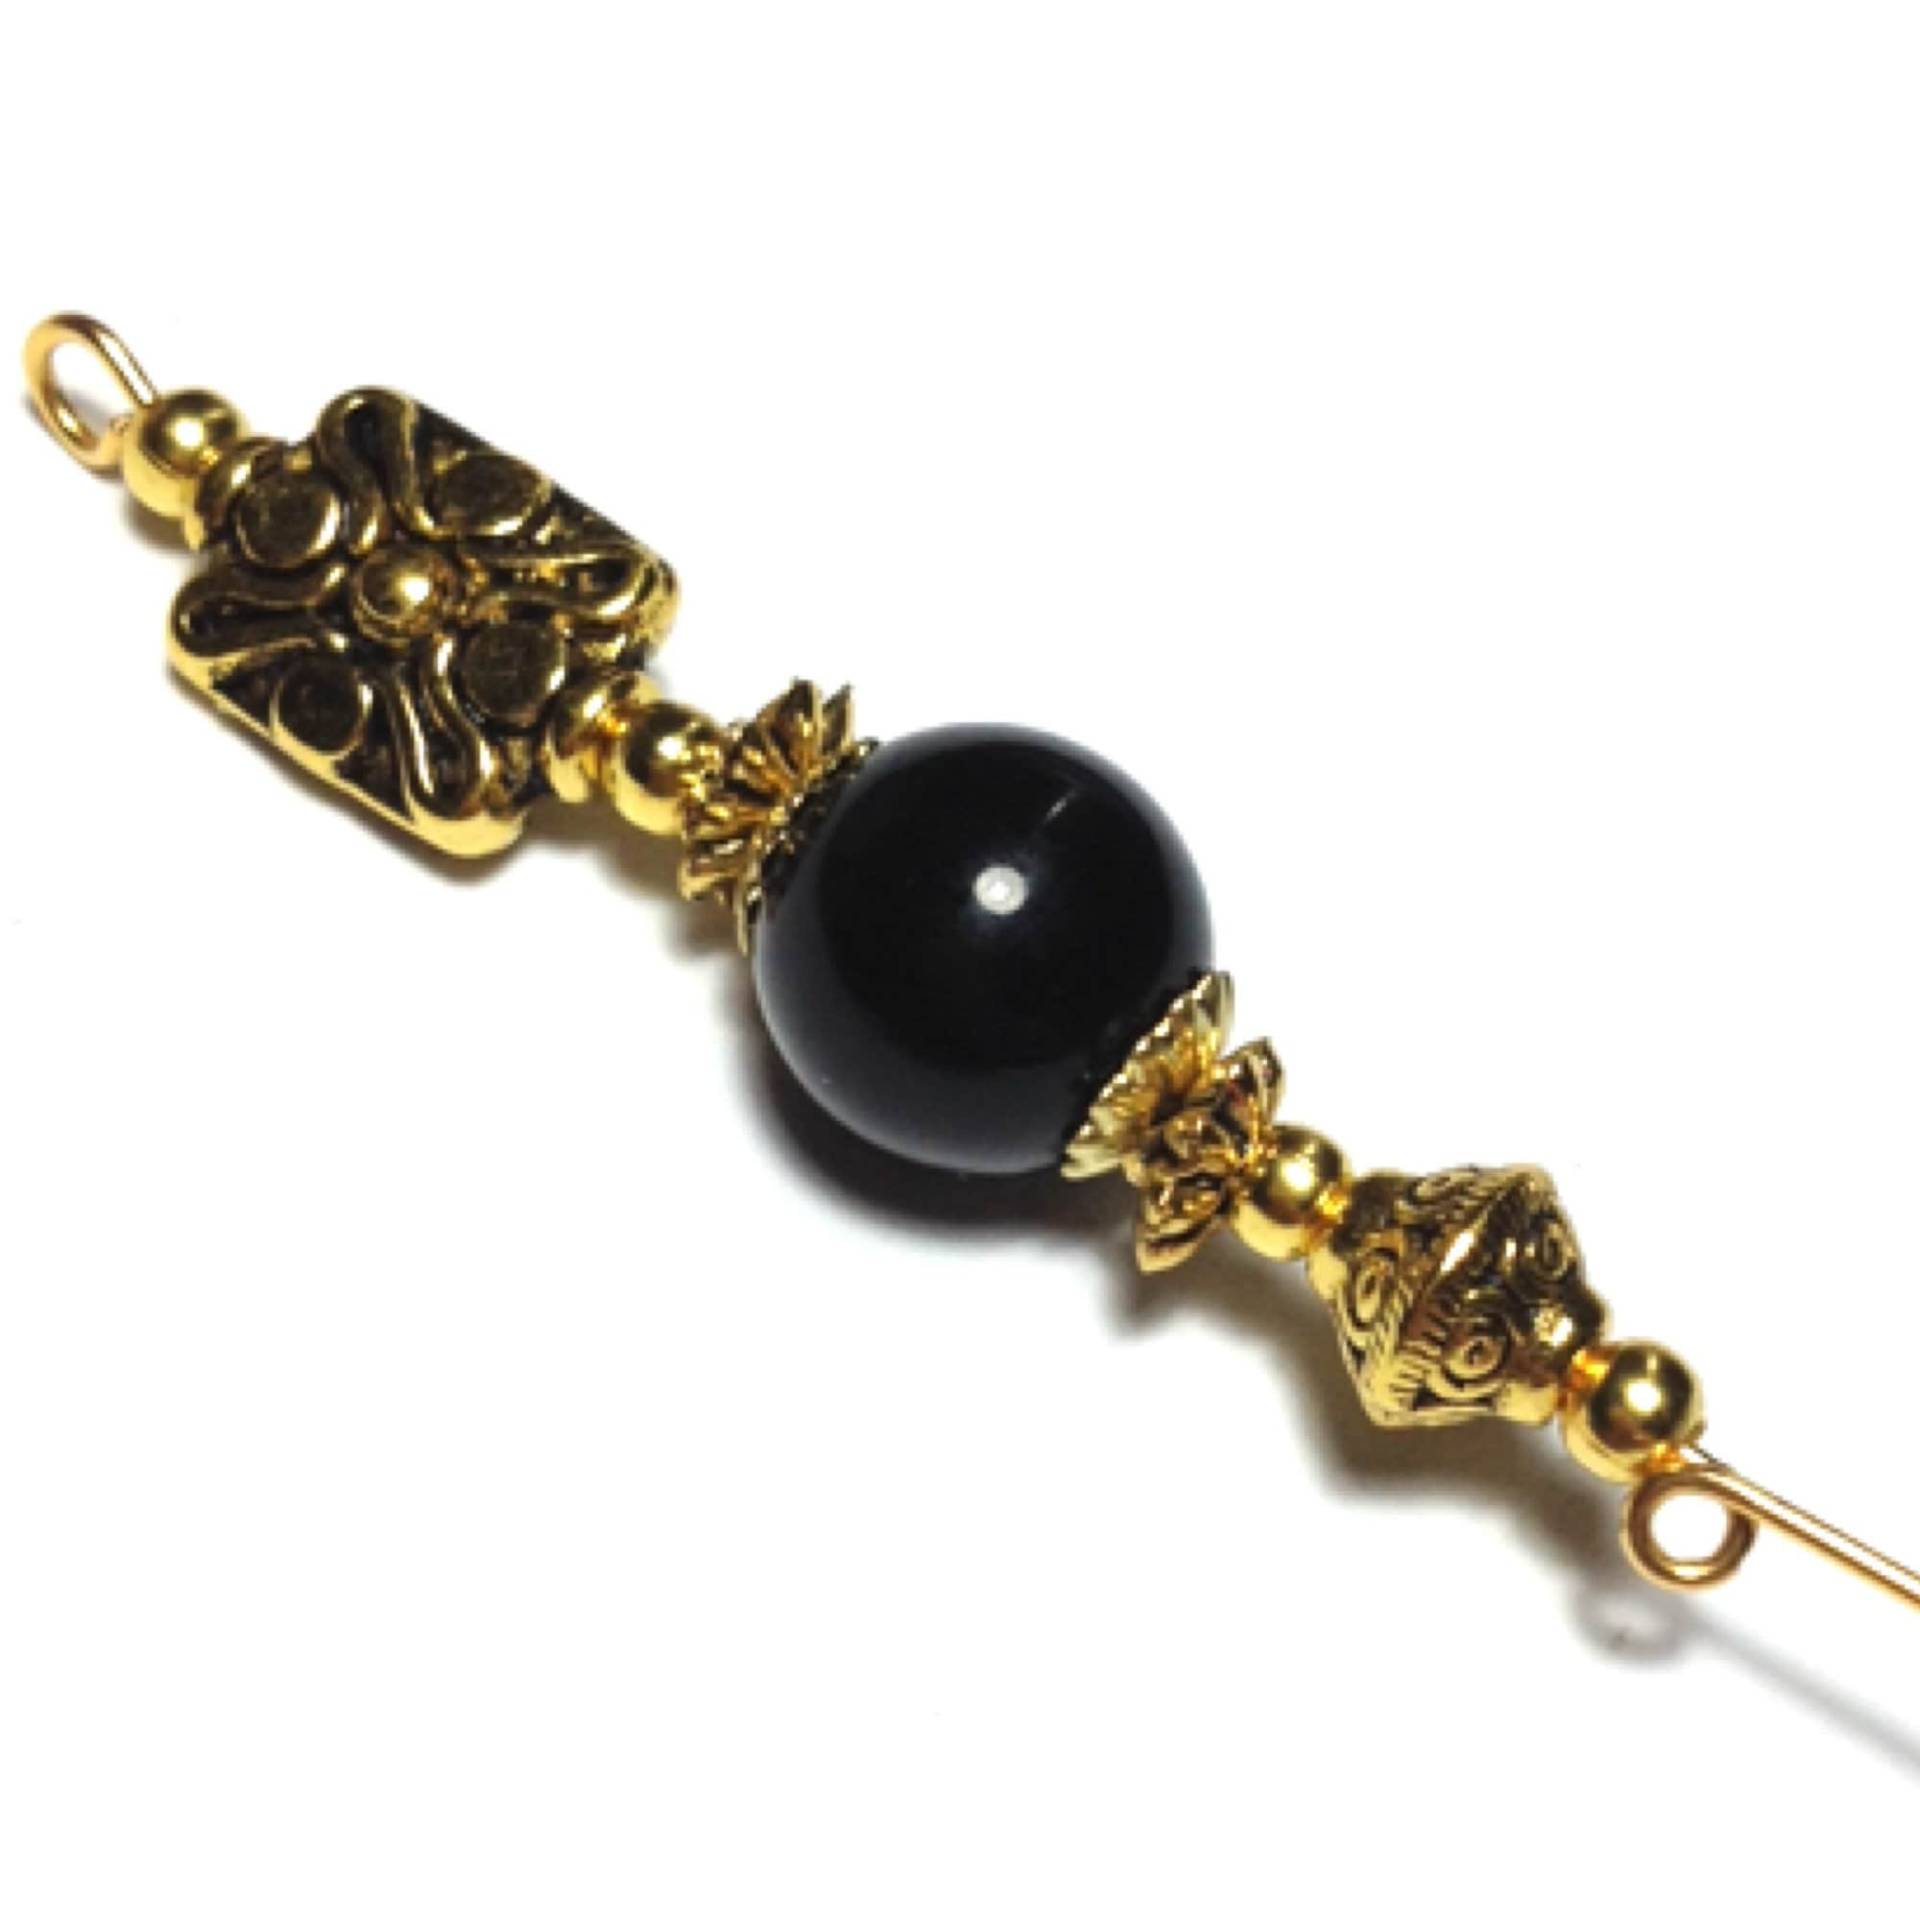 5" Gold Schwarz Glas Perlen Hut Pin Vintage Style - Mit Endschutz von CraftysodJewellery1